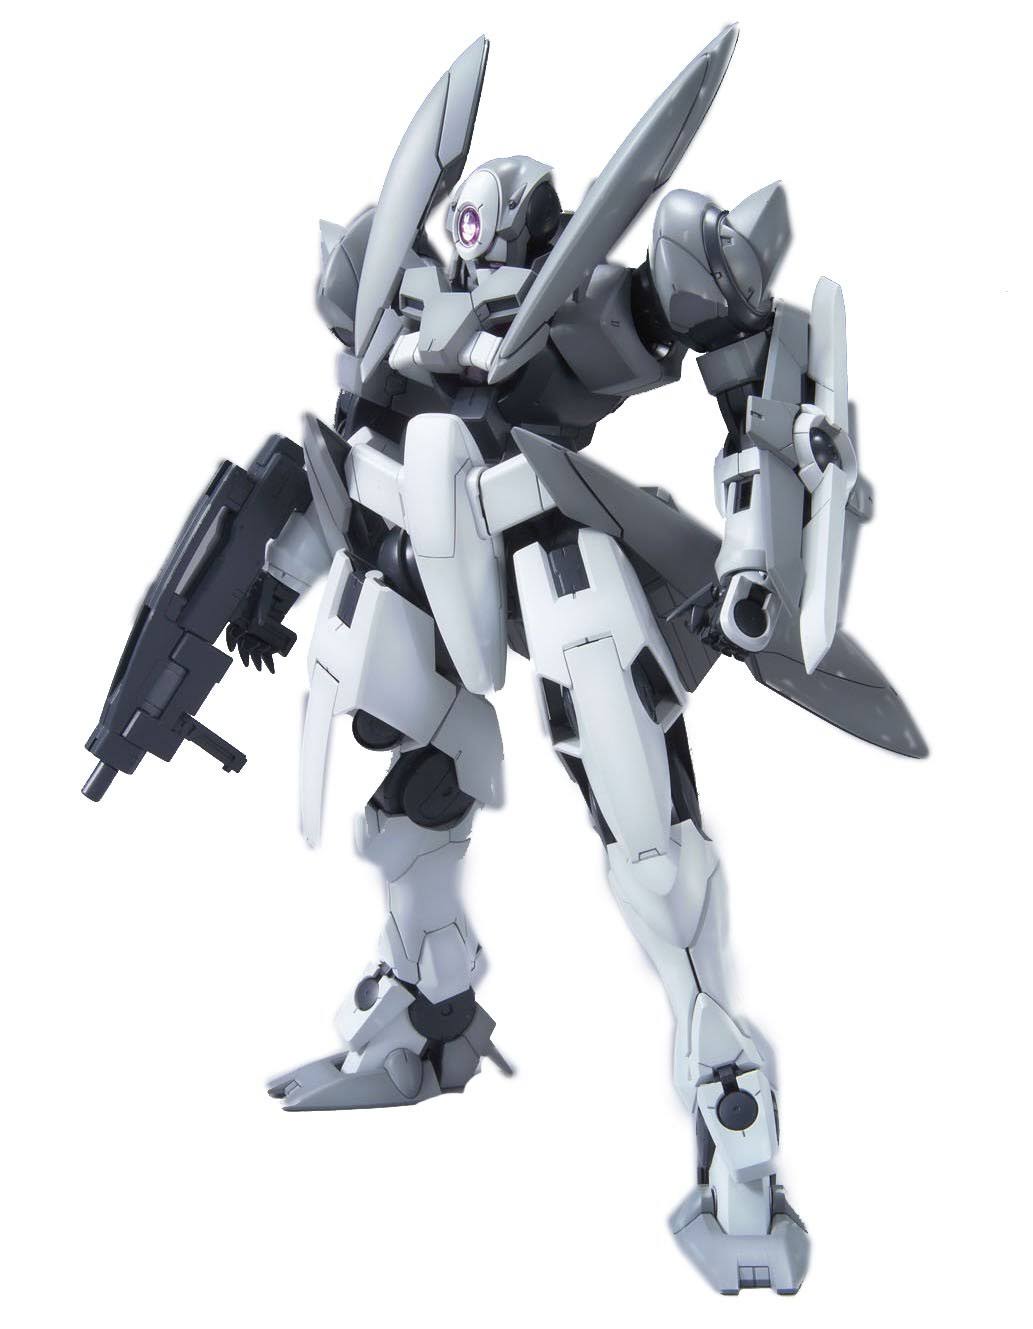 Bandai Hobby Gn-x Gundam Bandai Master Grade Action Figure